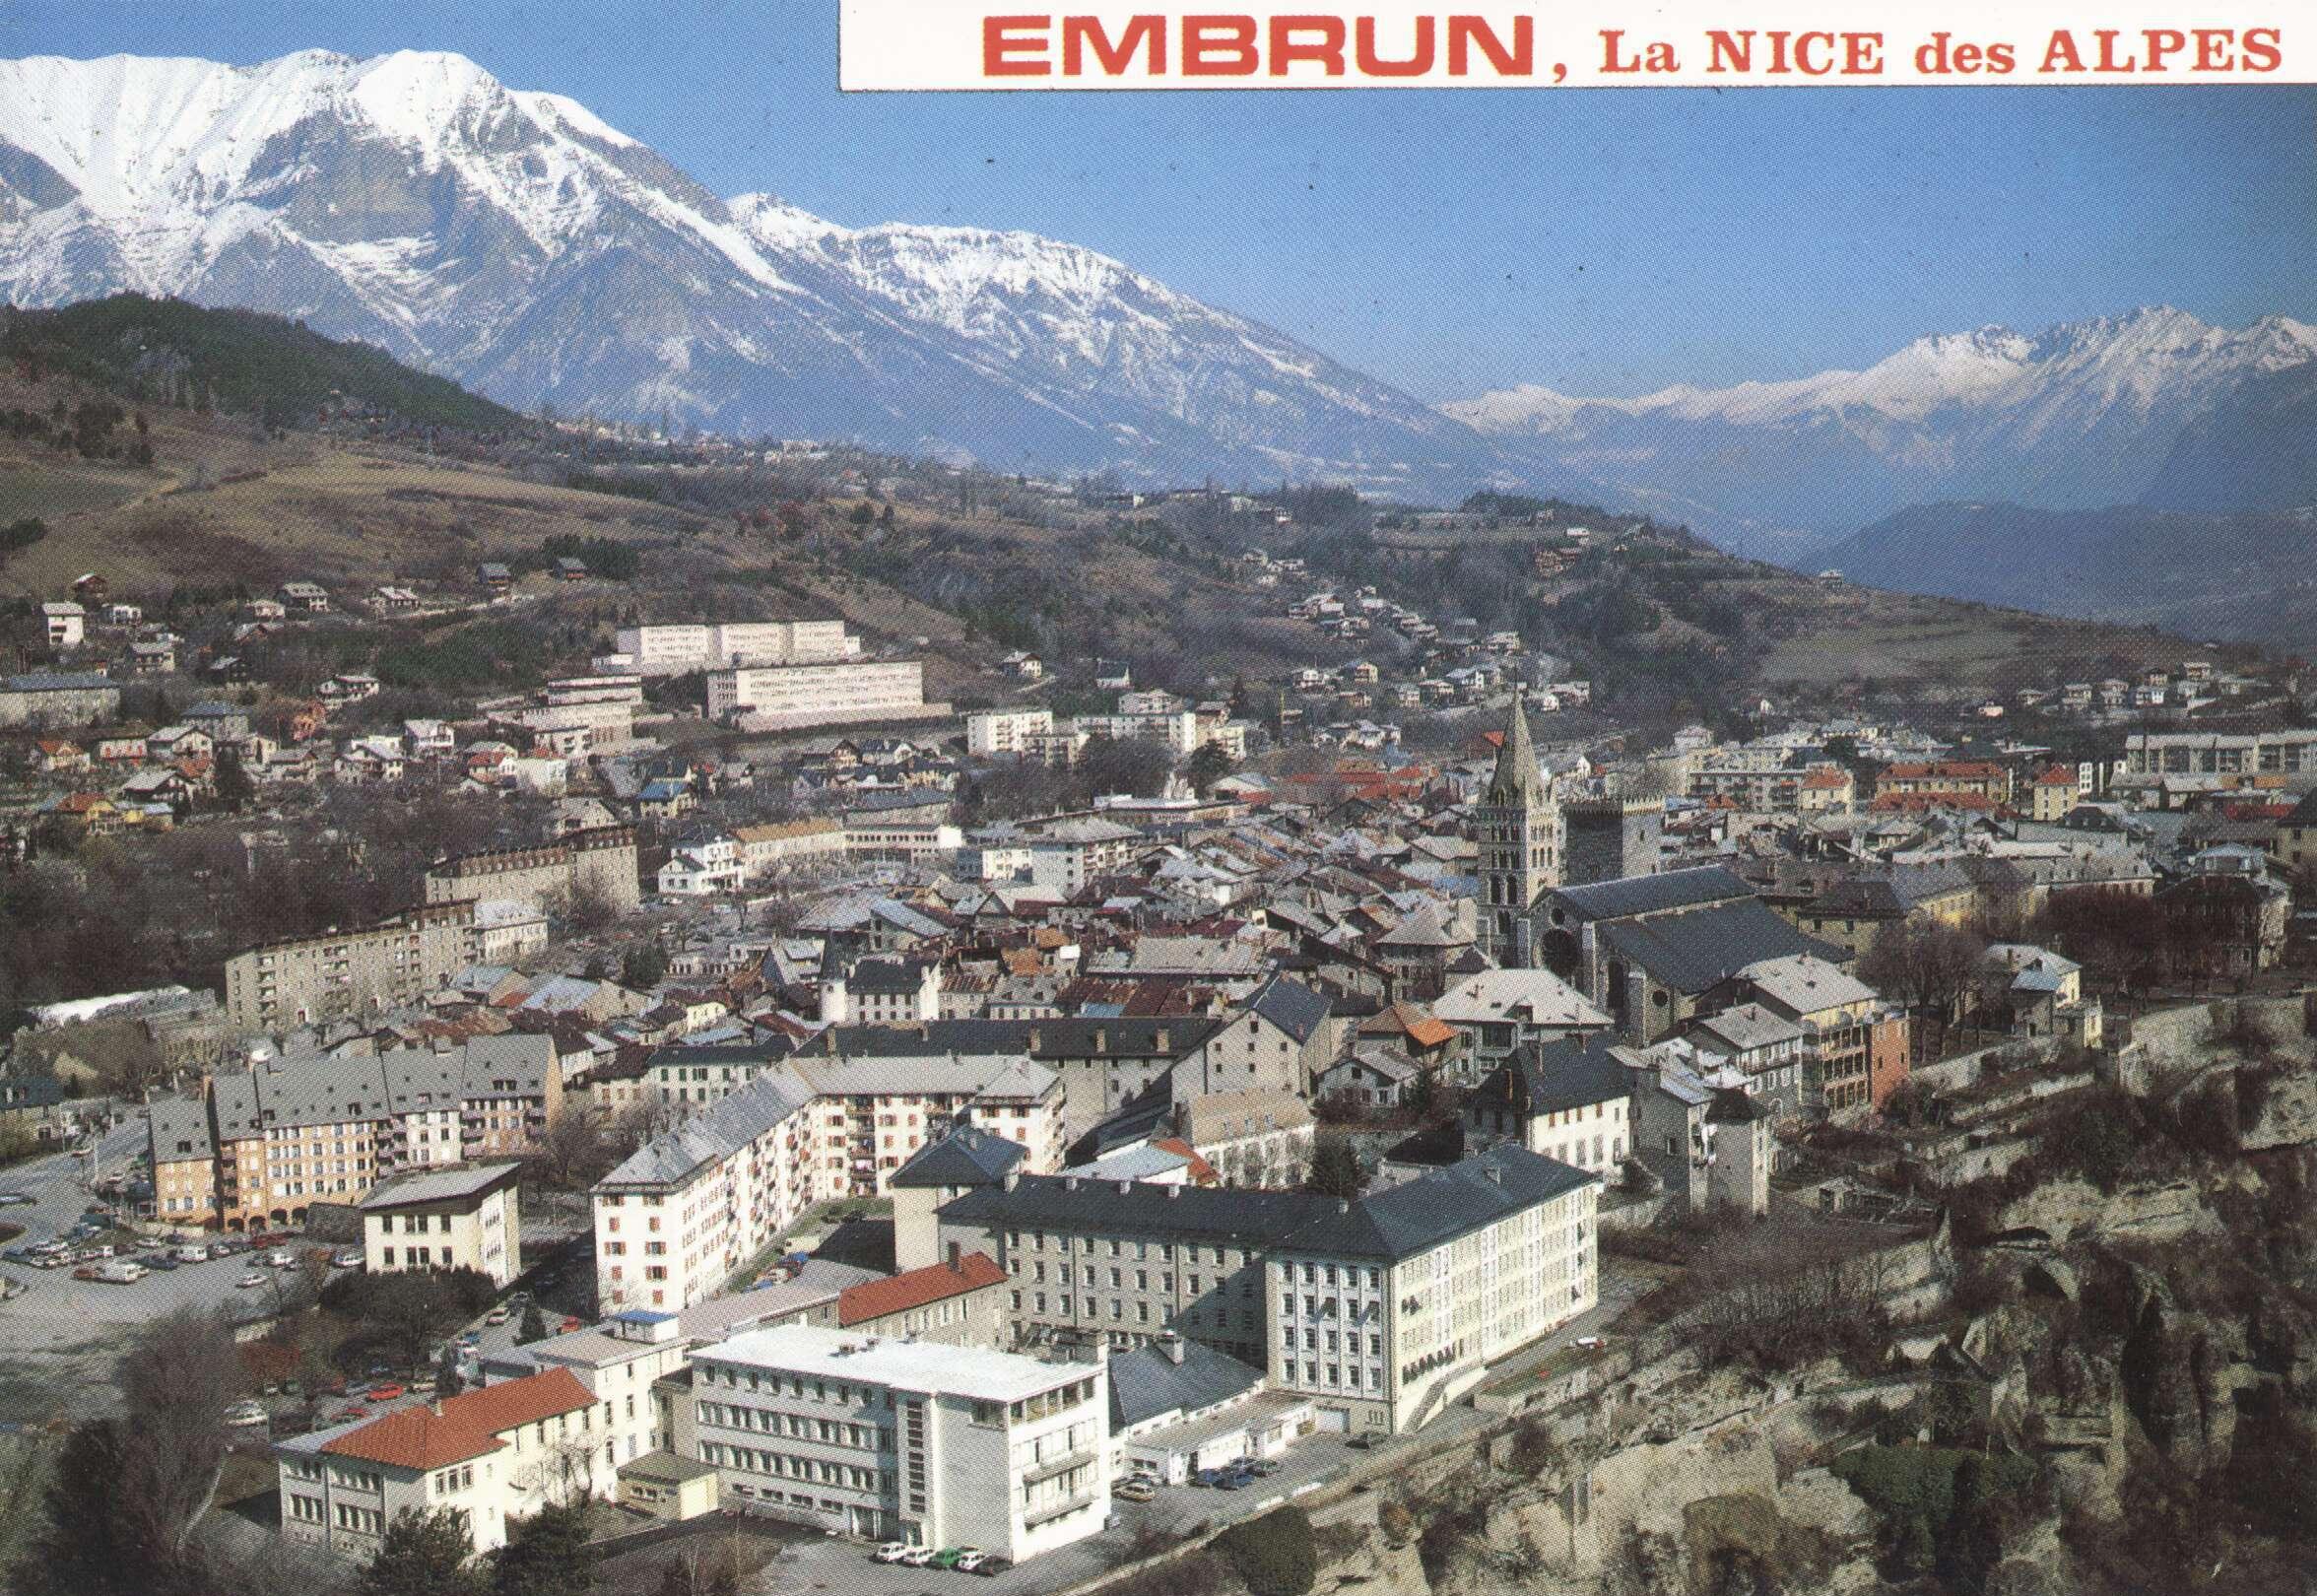 Visite guidée : Embrun, "Nice des Alpes"